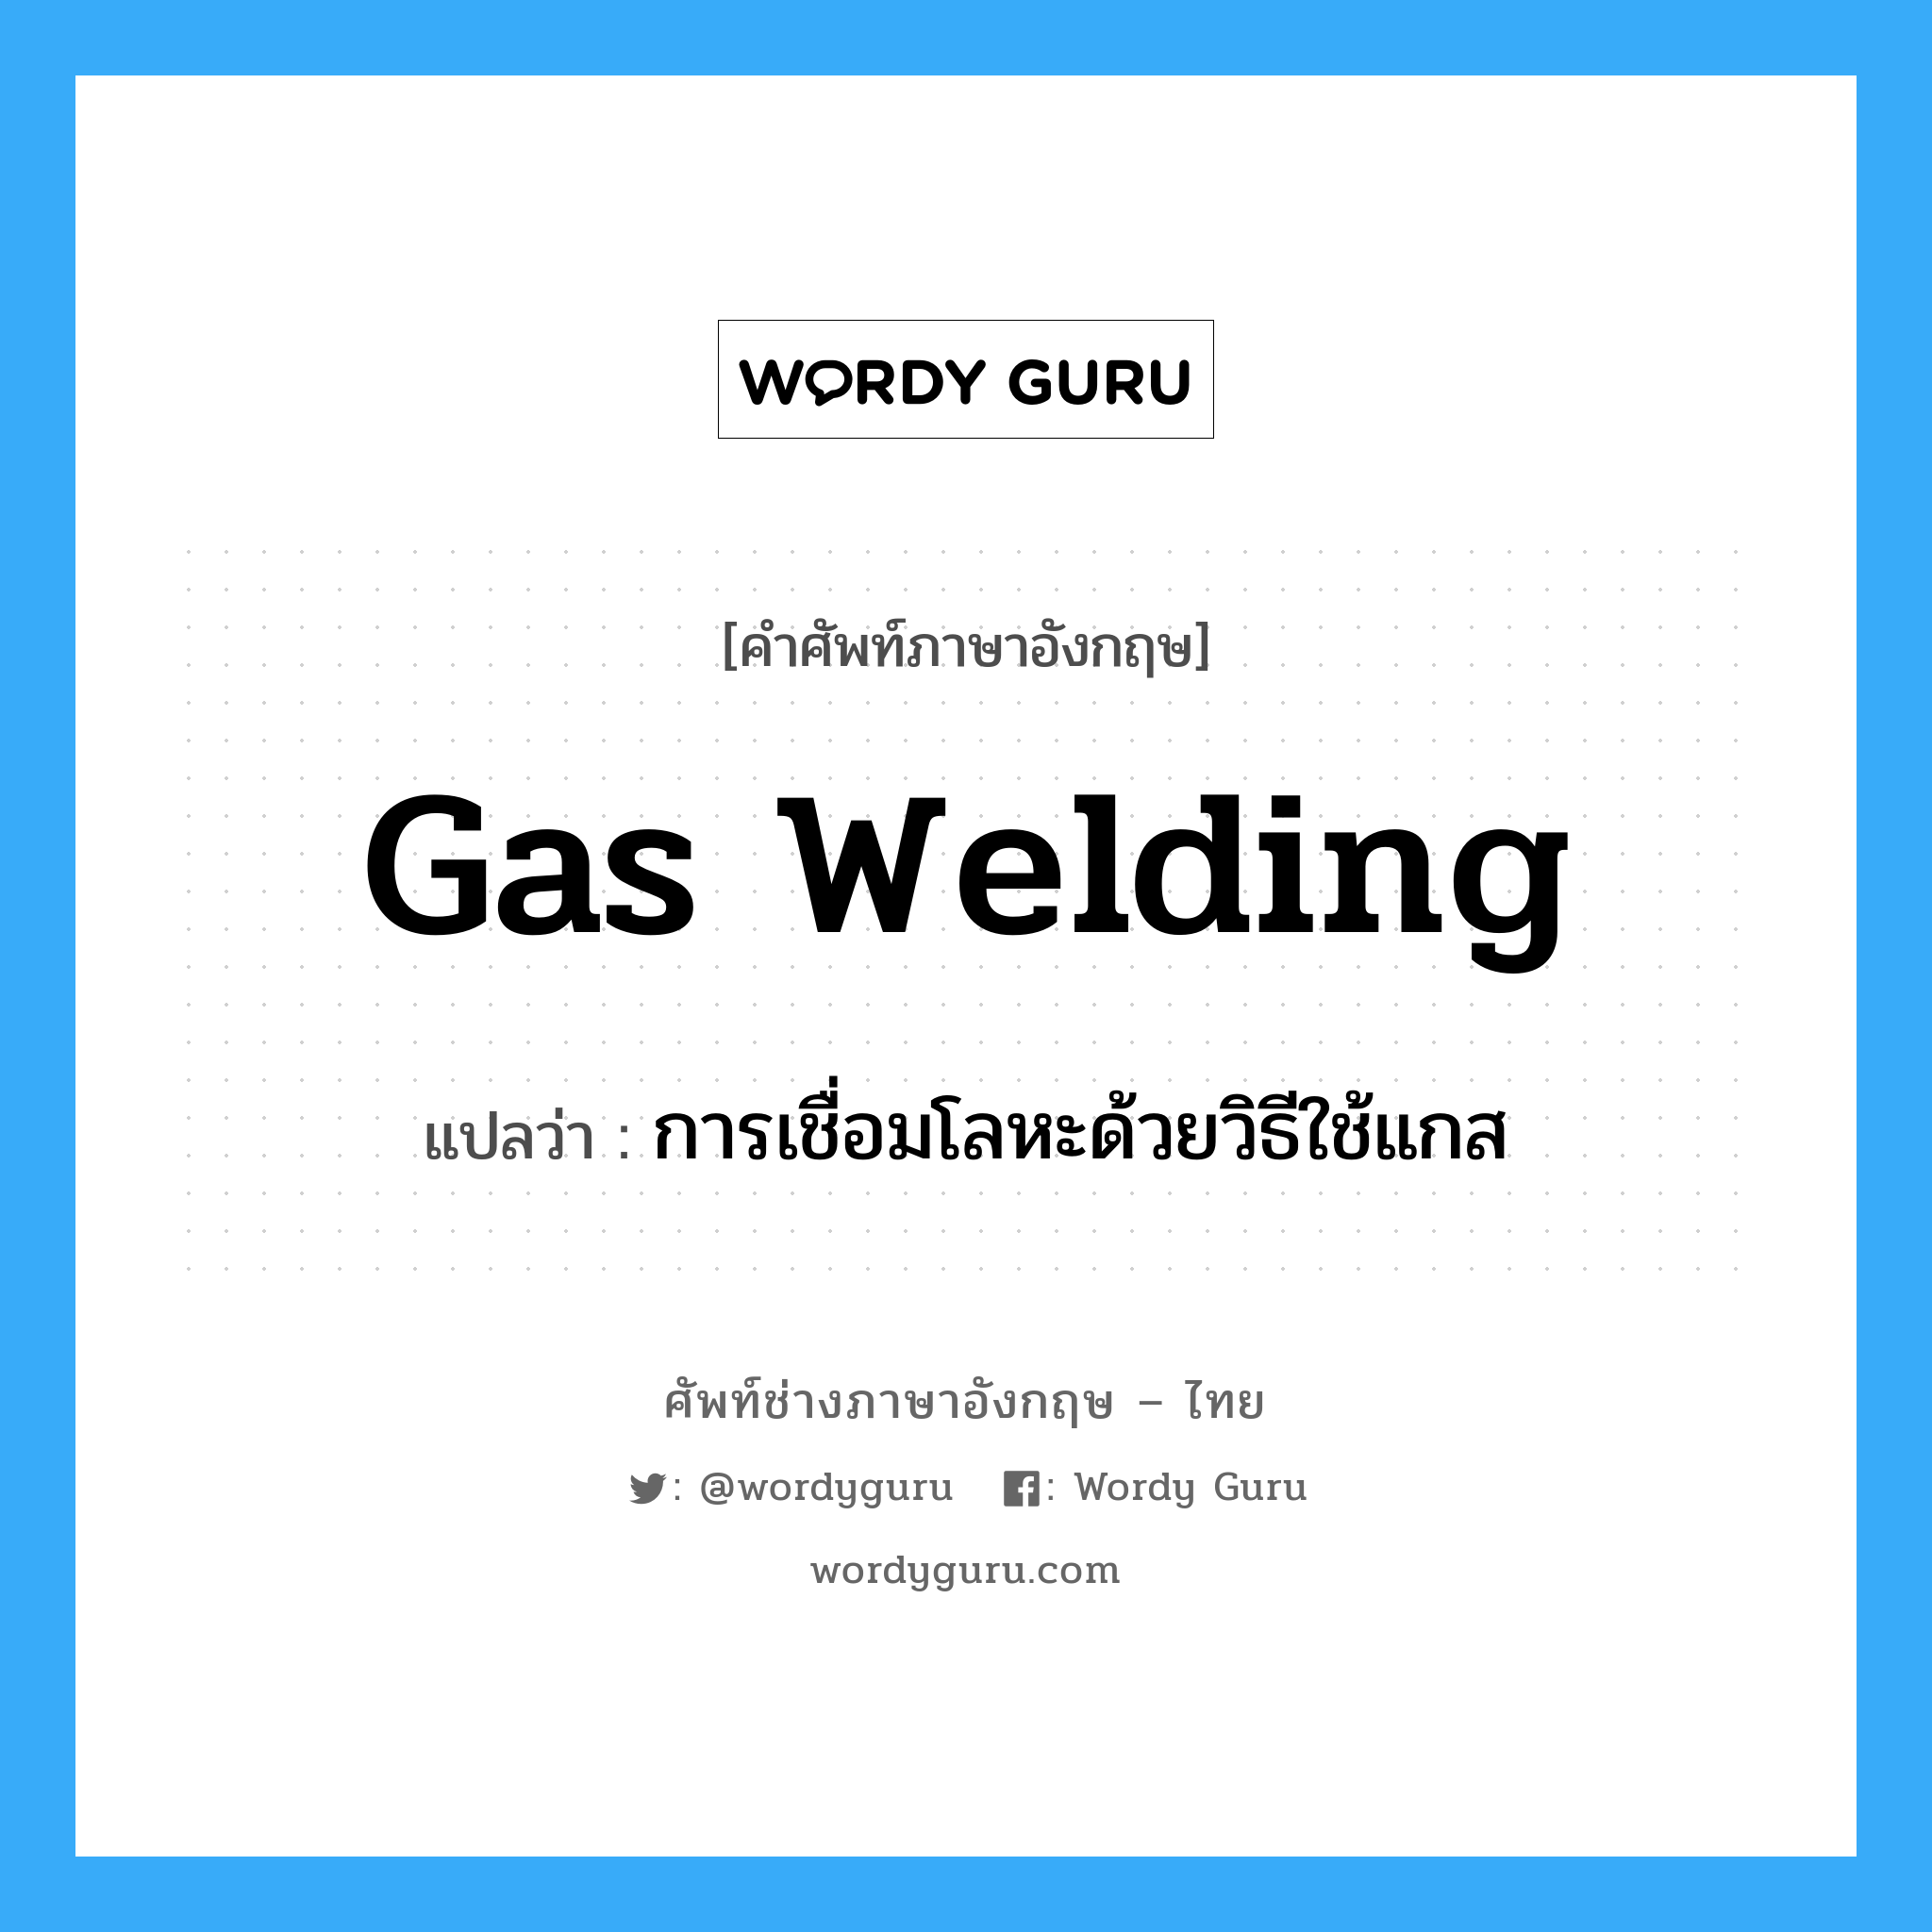 การเชื่อมโลหะด้วยวิธีใช้แกส ภาษาอังกฤษ?, คำศัพท์ช่างภาษาอังกฤษ - ไทย การเชื่อมโลหะด้วยวิธีใช้แกส คำศัพท์ภาษาอังกฤษ การเชื่อมโลหะด้วยวิธีใช้แกส แปลว่า gas welding